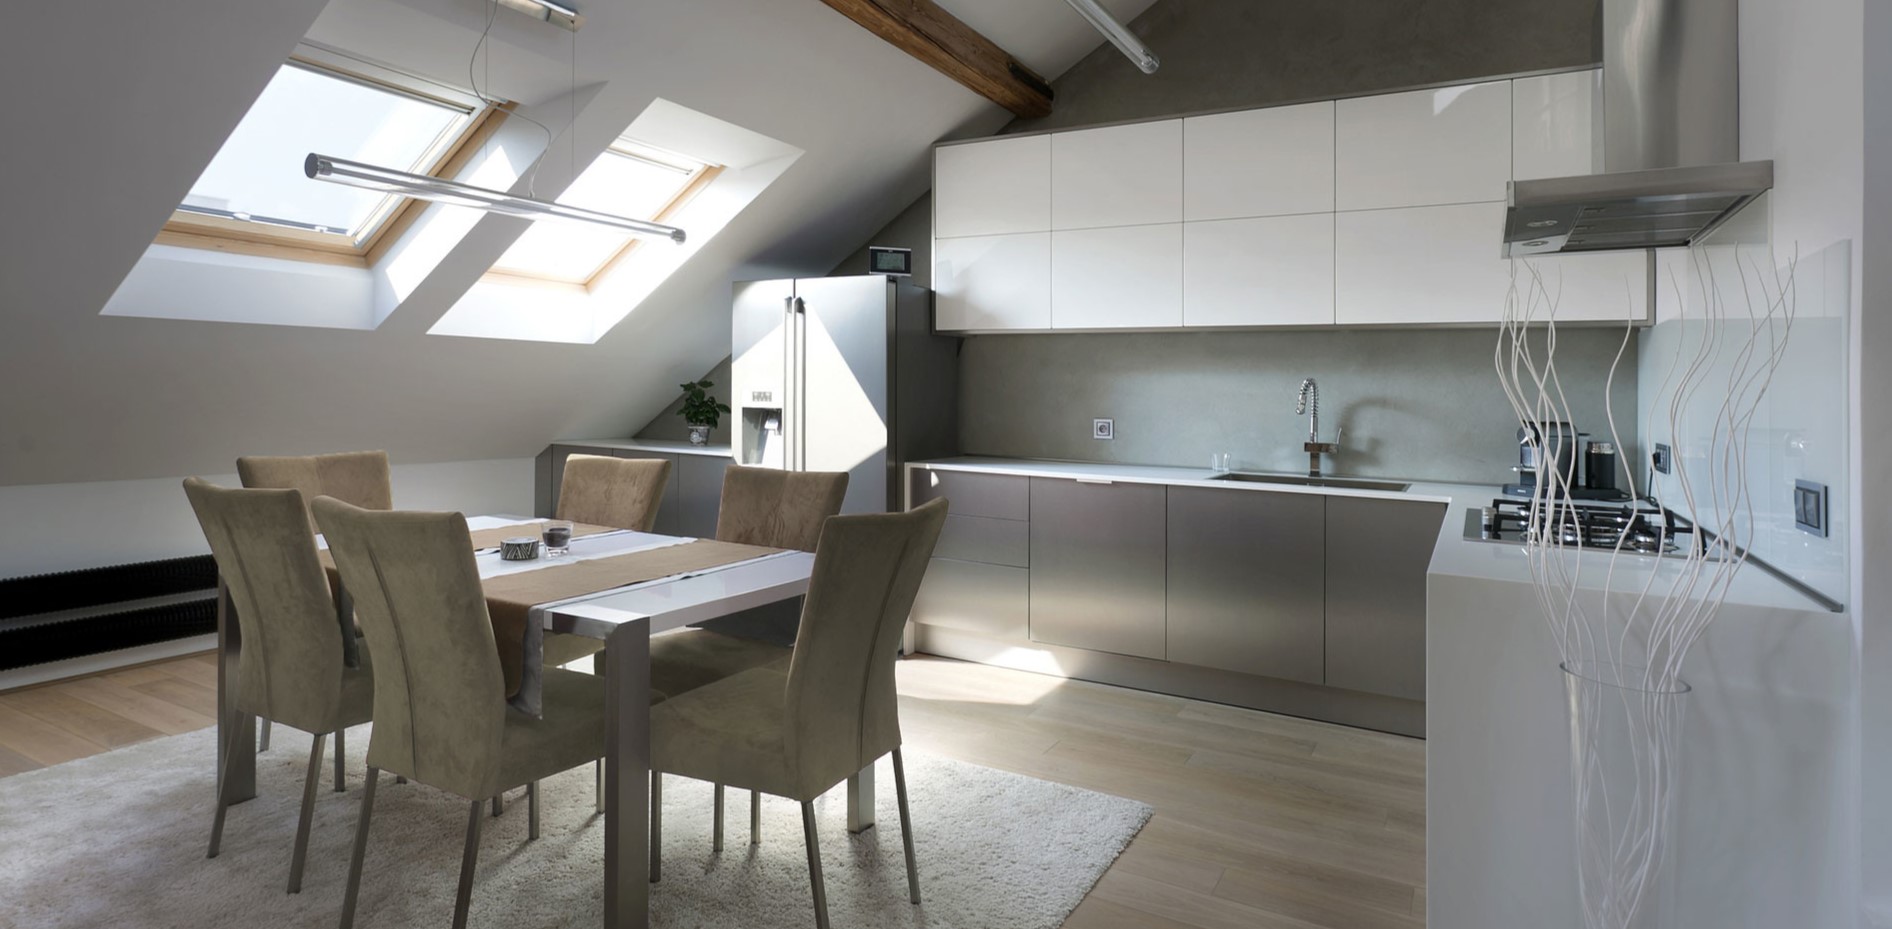 Для создания интерьера в стиле лофт можно использовать кухонный гарнитур серого и белого цвета без лишнего декора